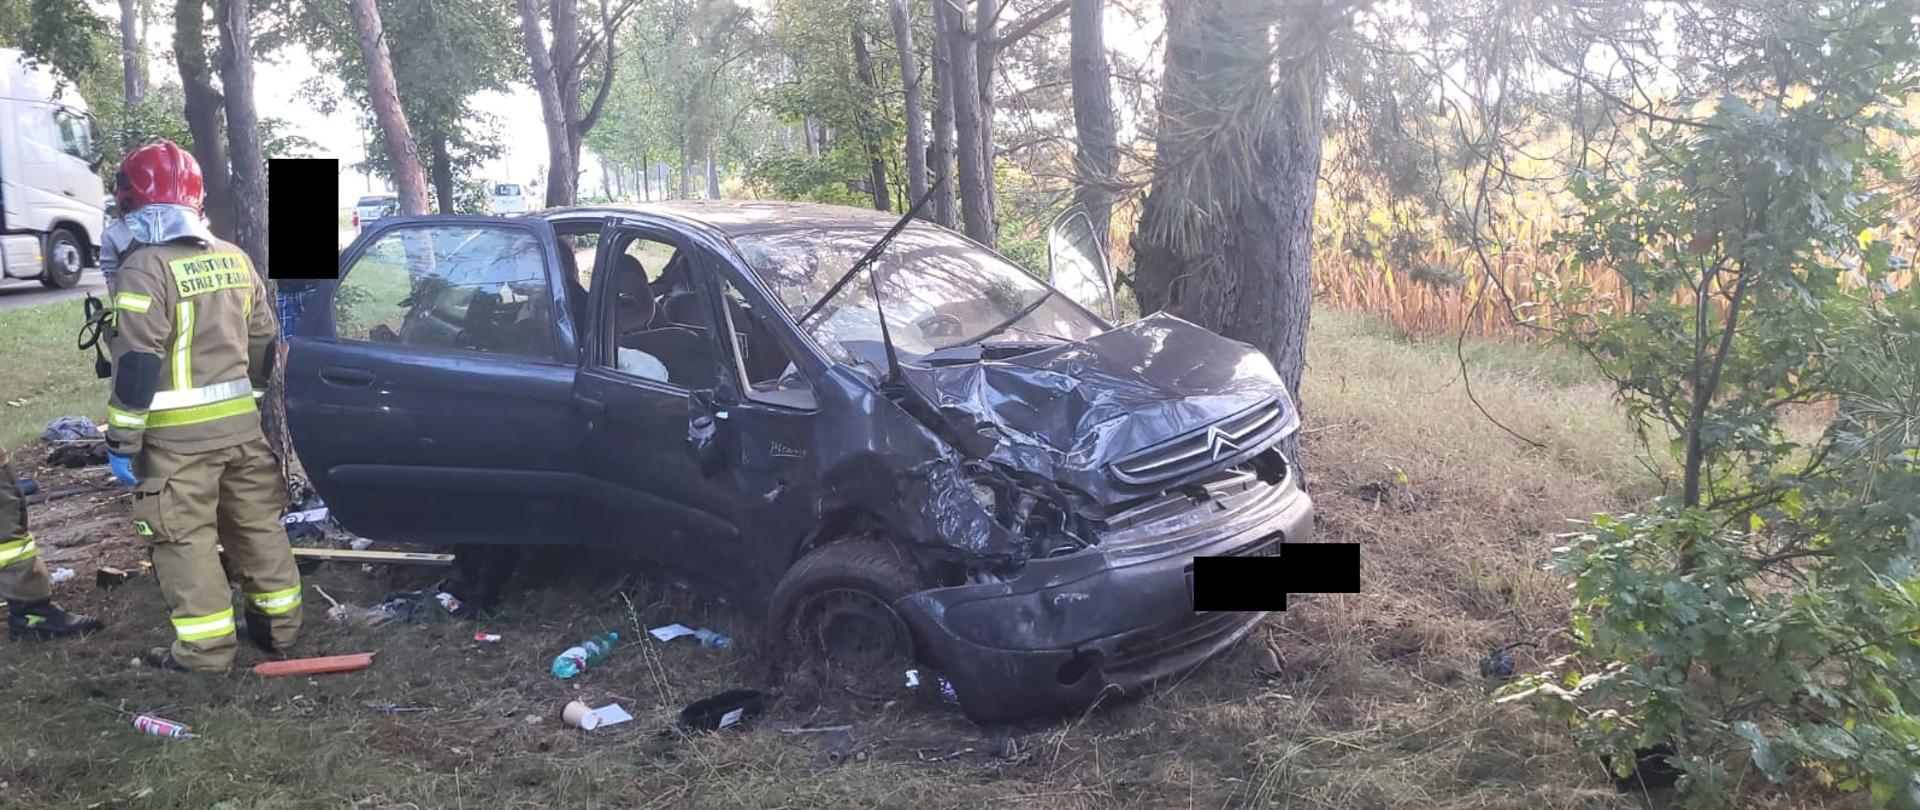 Ciemny, uszkodzony samochód znajduje się w lesie, widok od przodu